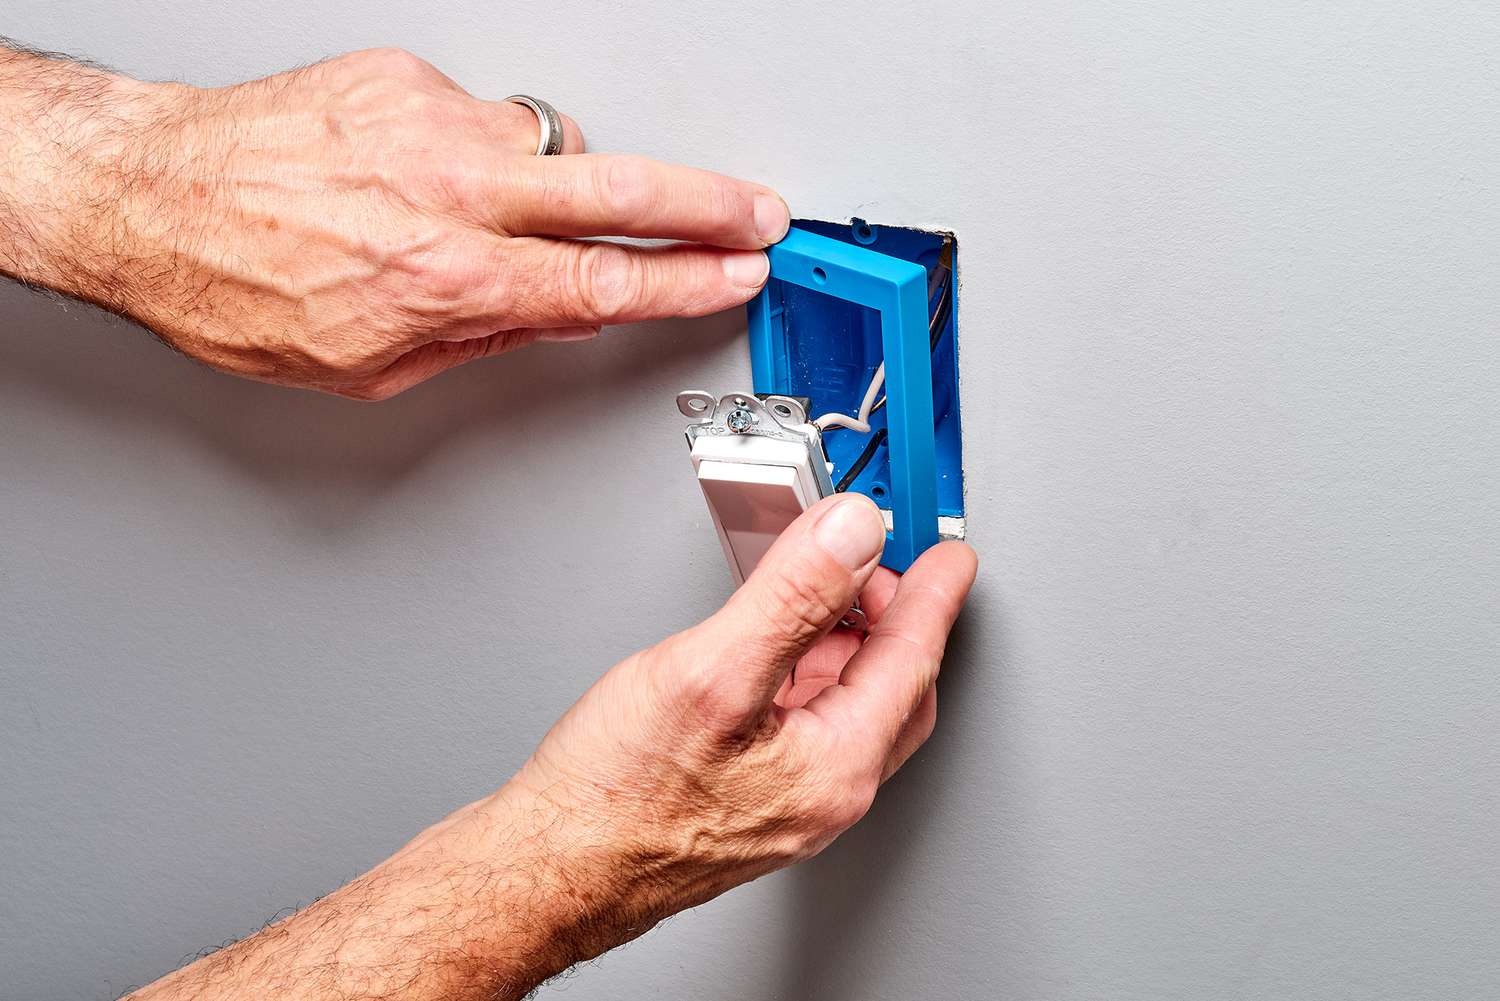 Blaue Dosenverlängerung wird über die elektrische Dose gestülpt, während der Schalter gehalten wird